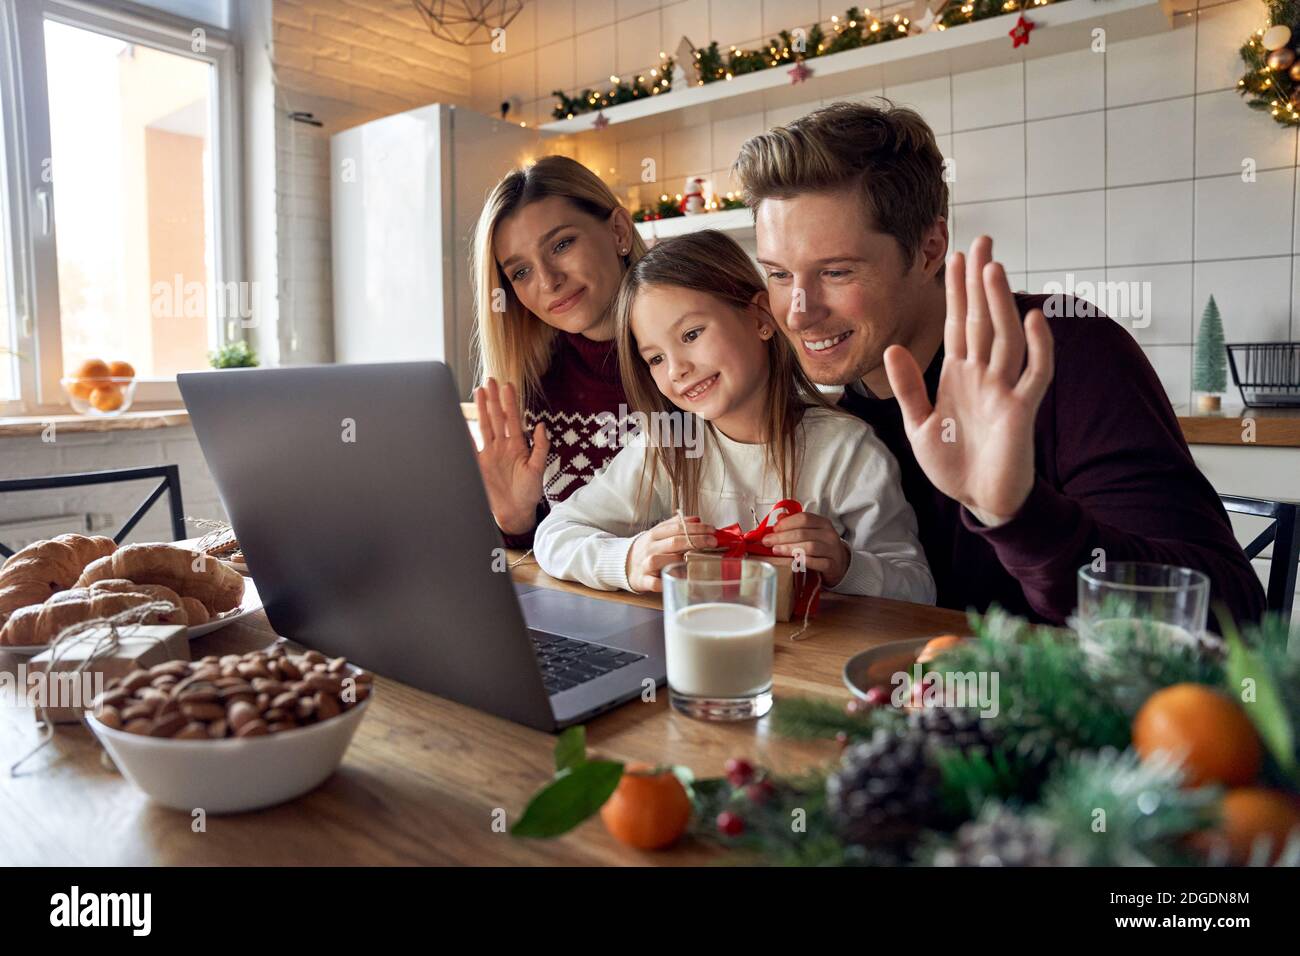 Buona famiglia con la figlia di un bambino che usa un computer portatile e che ha una festa virtuale in videochiamata. Foto Stock